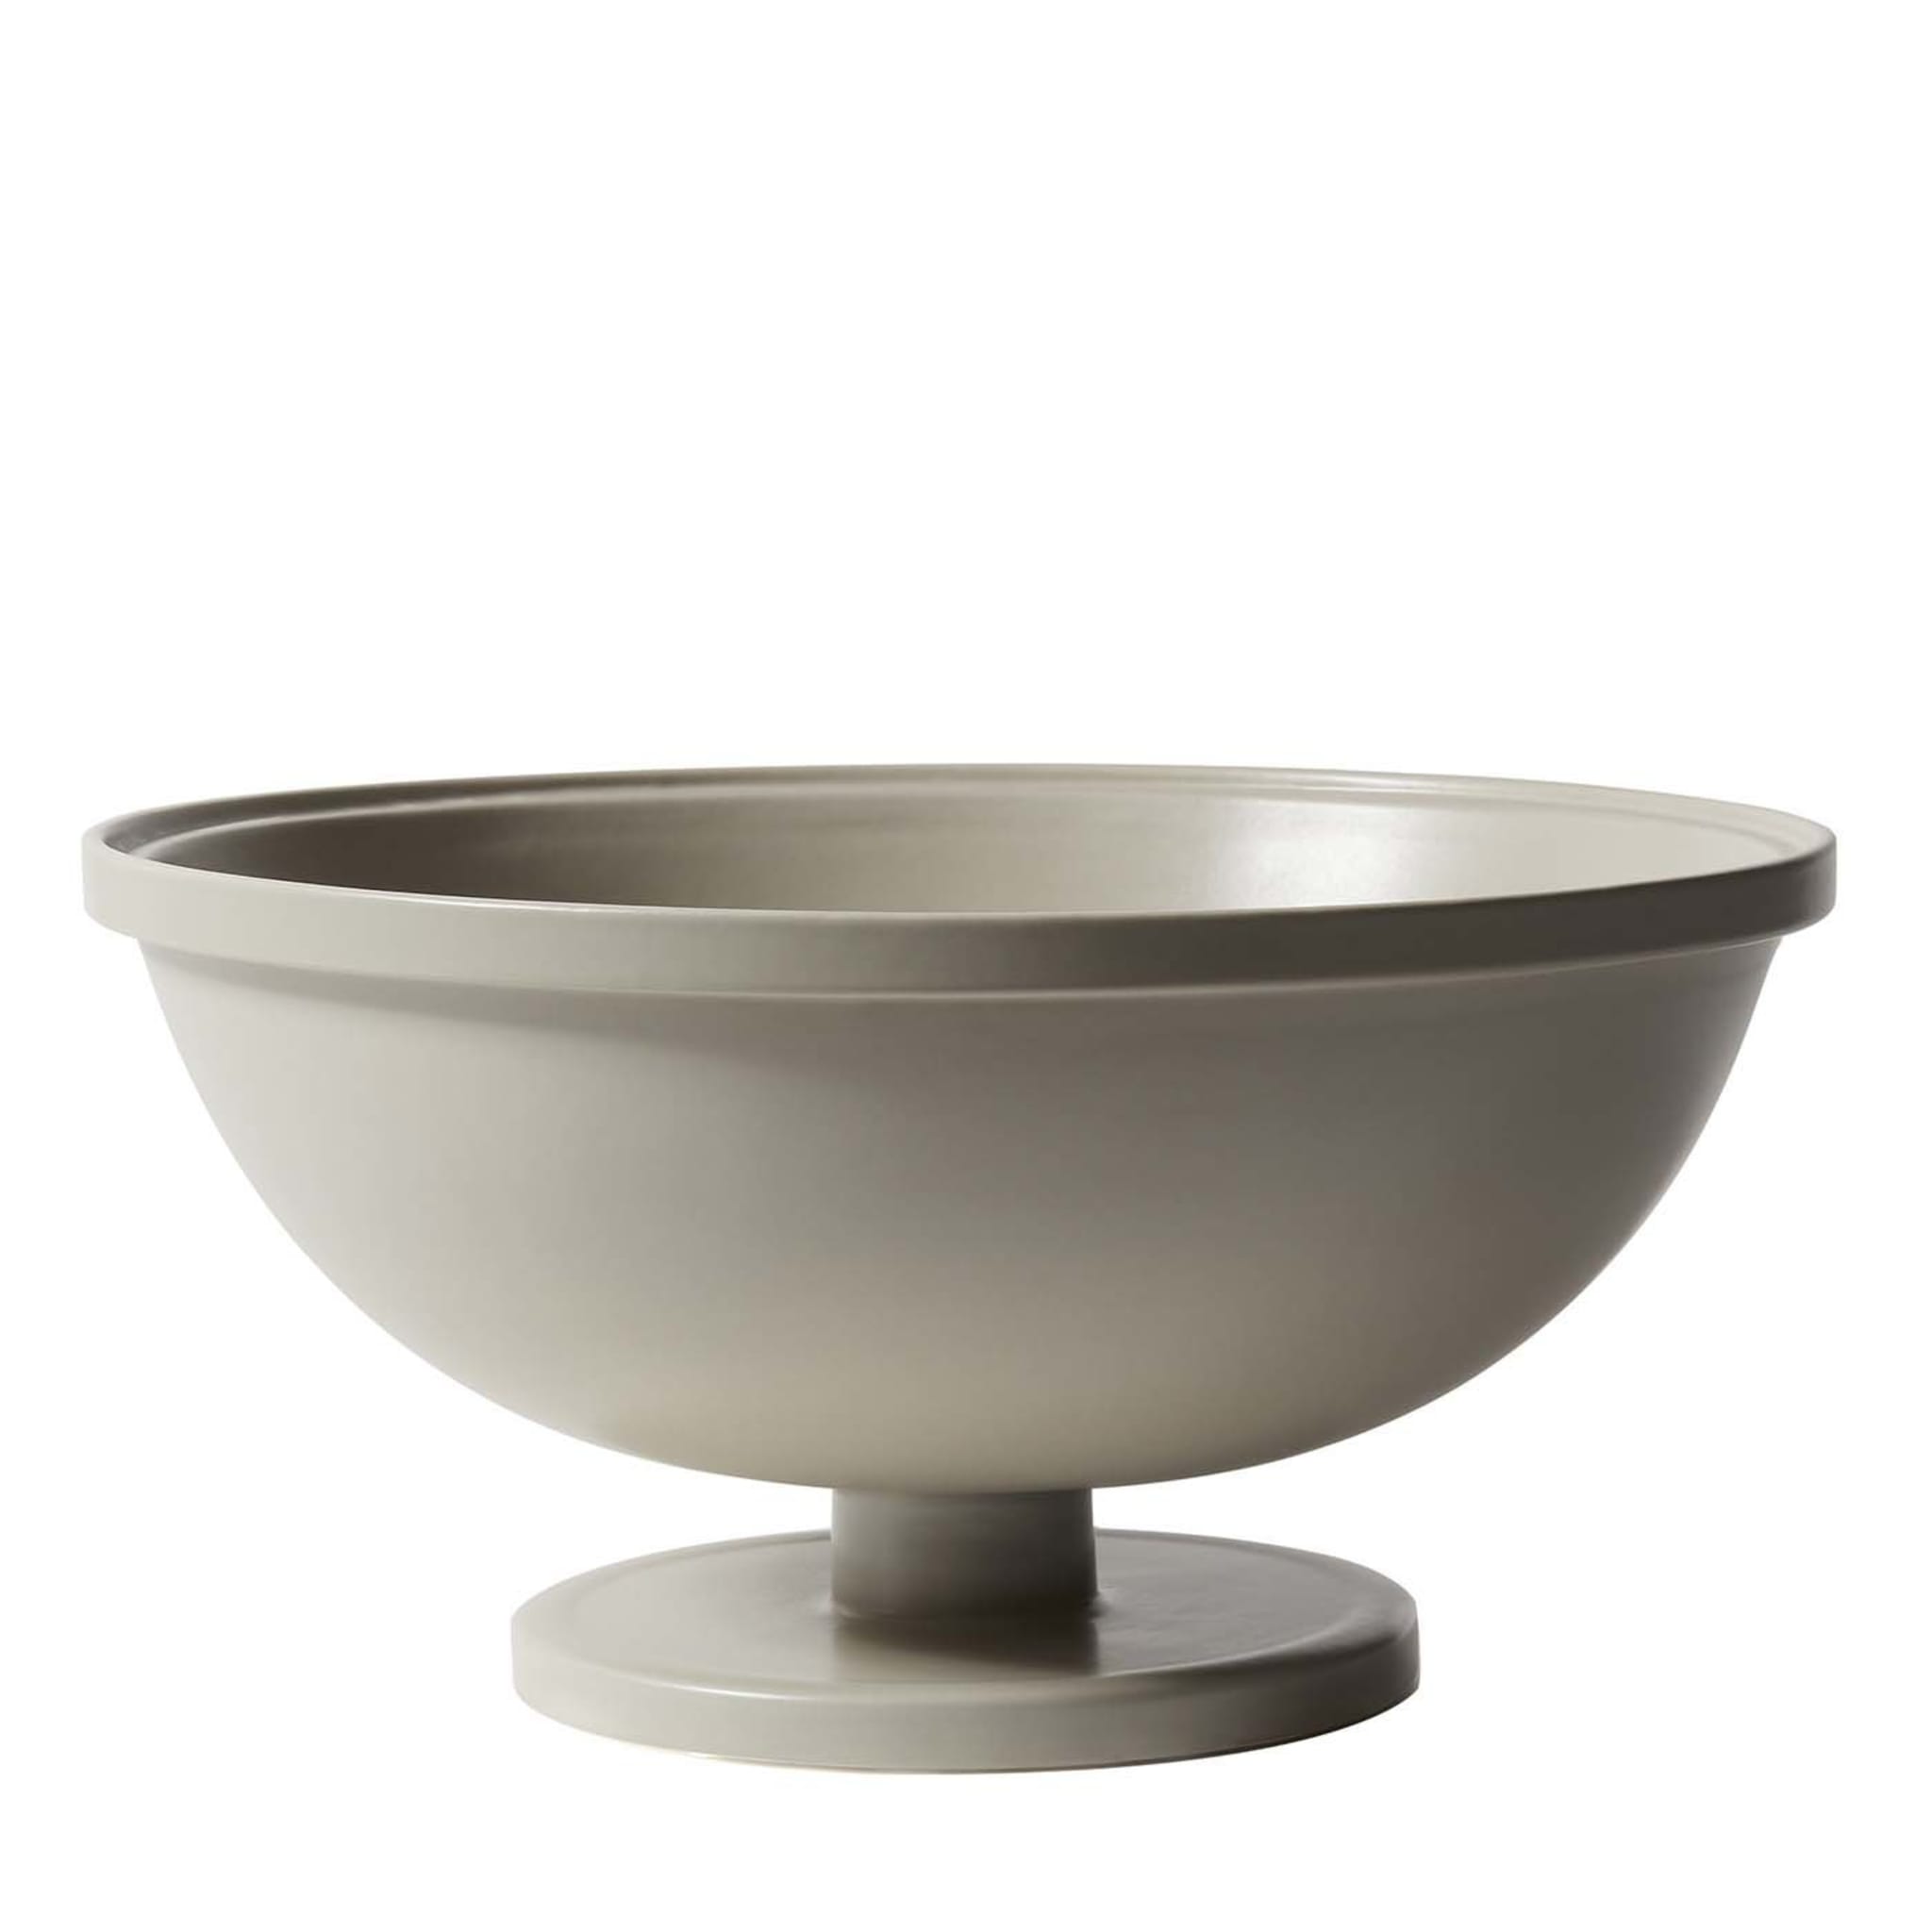 Copa grande de cerámica gris Cuppone de Aldo Cibic - Vista principal